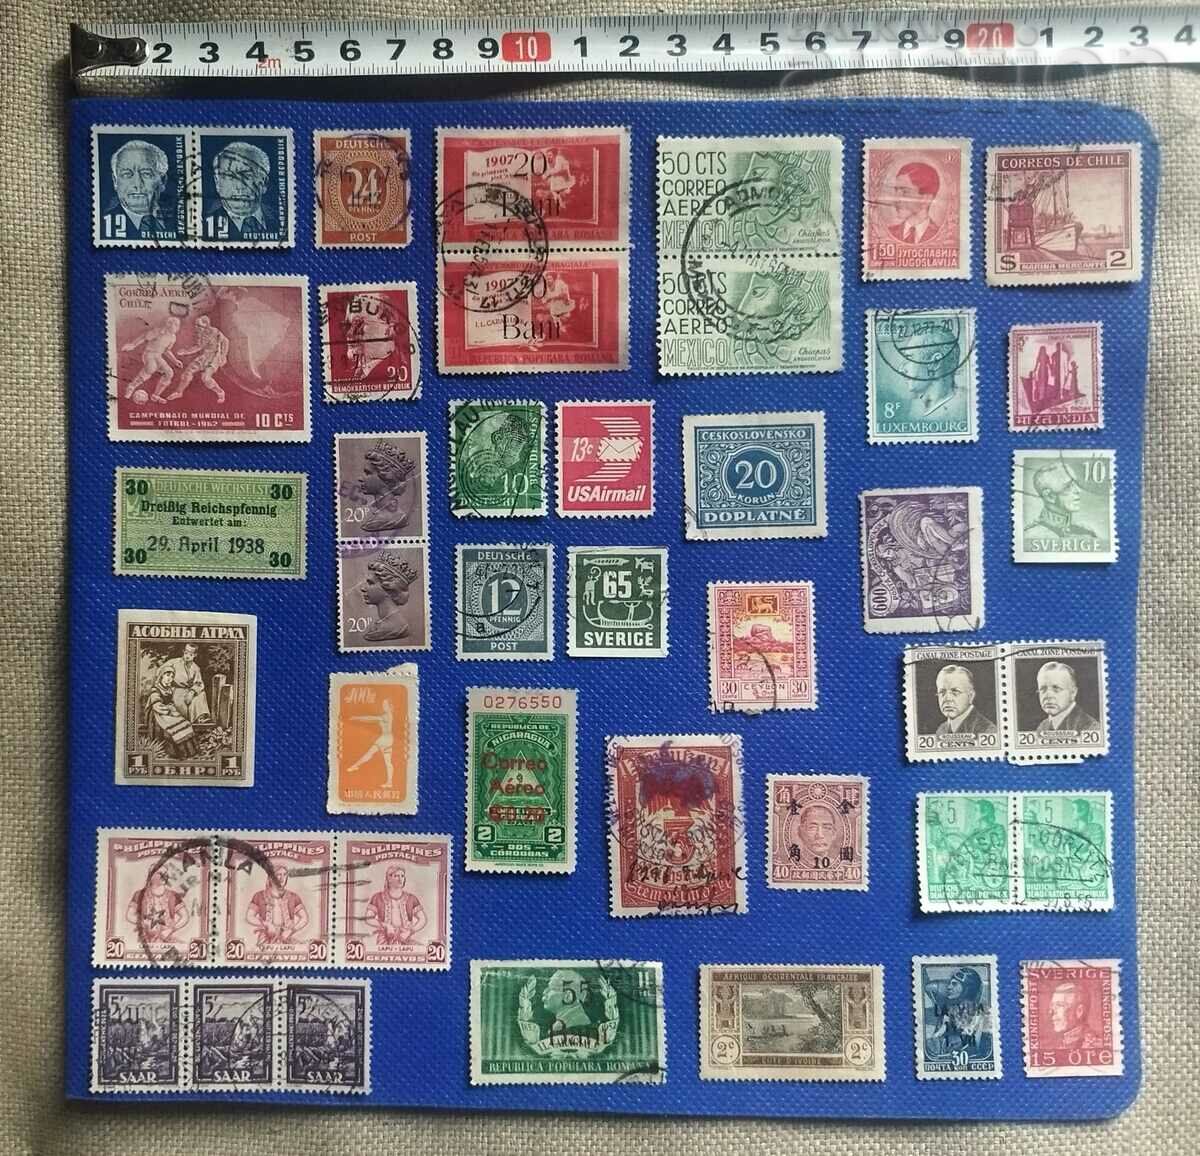 Πολλά γραμματόσημα (15)